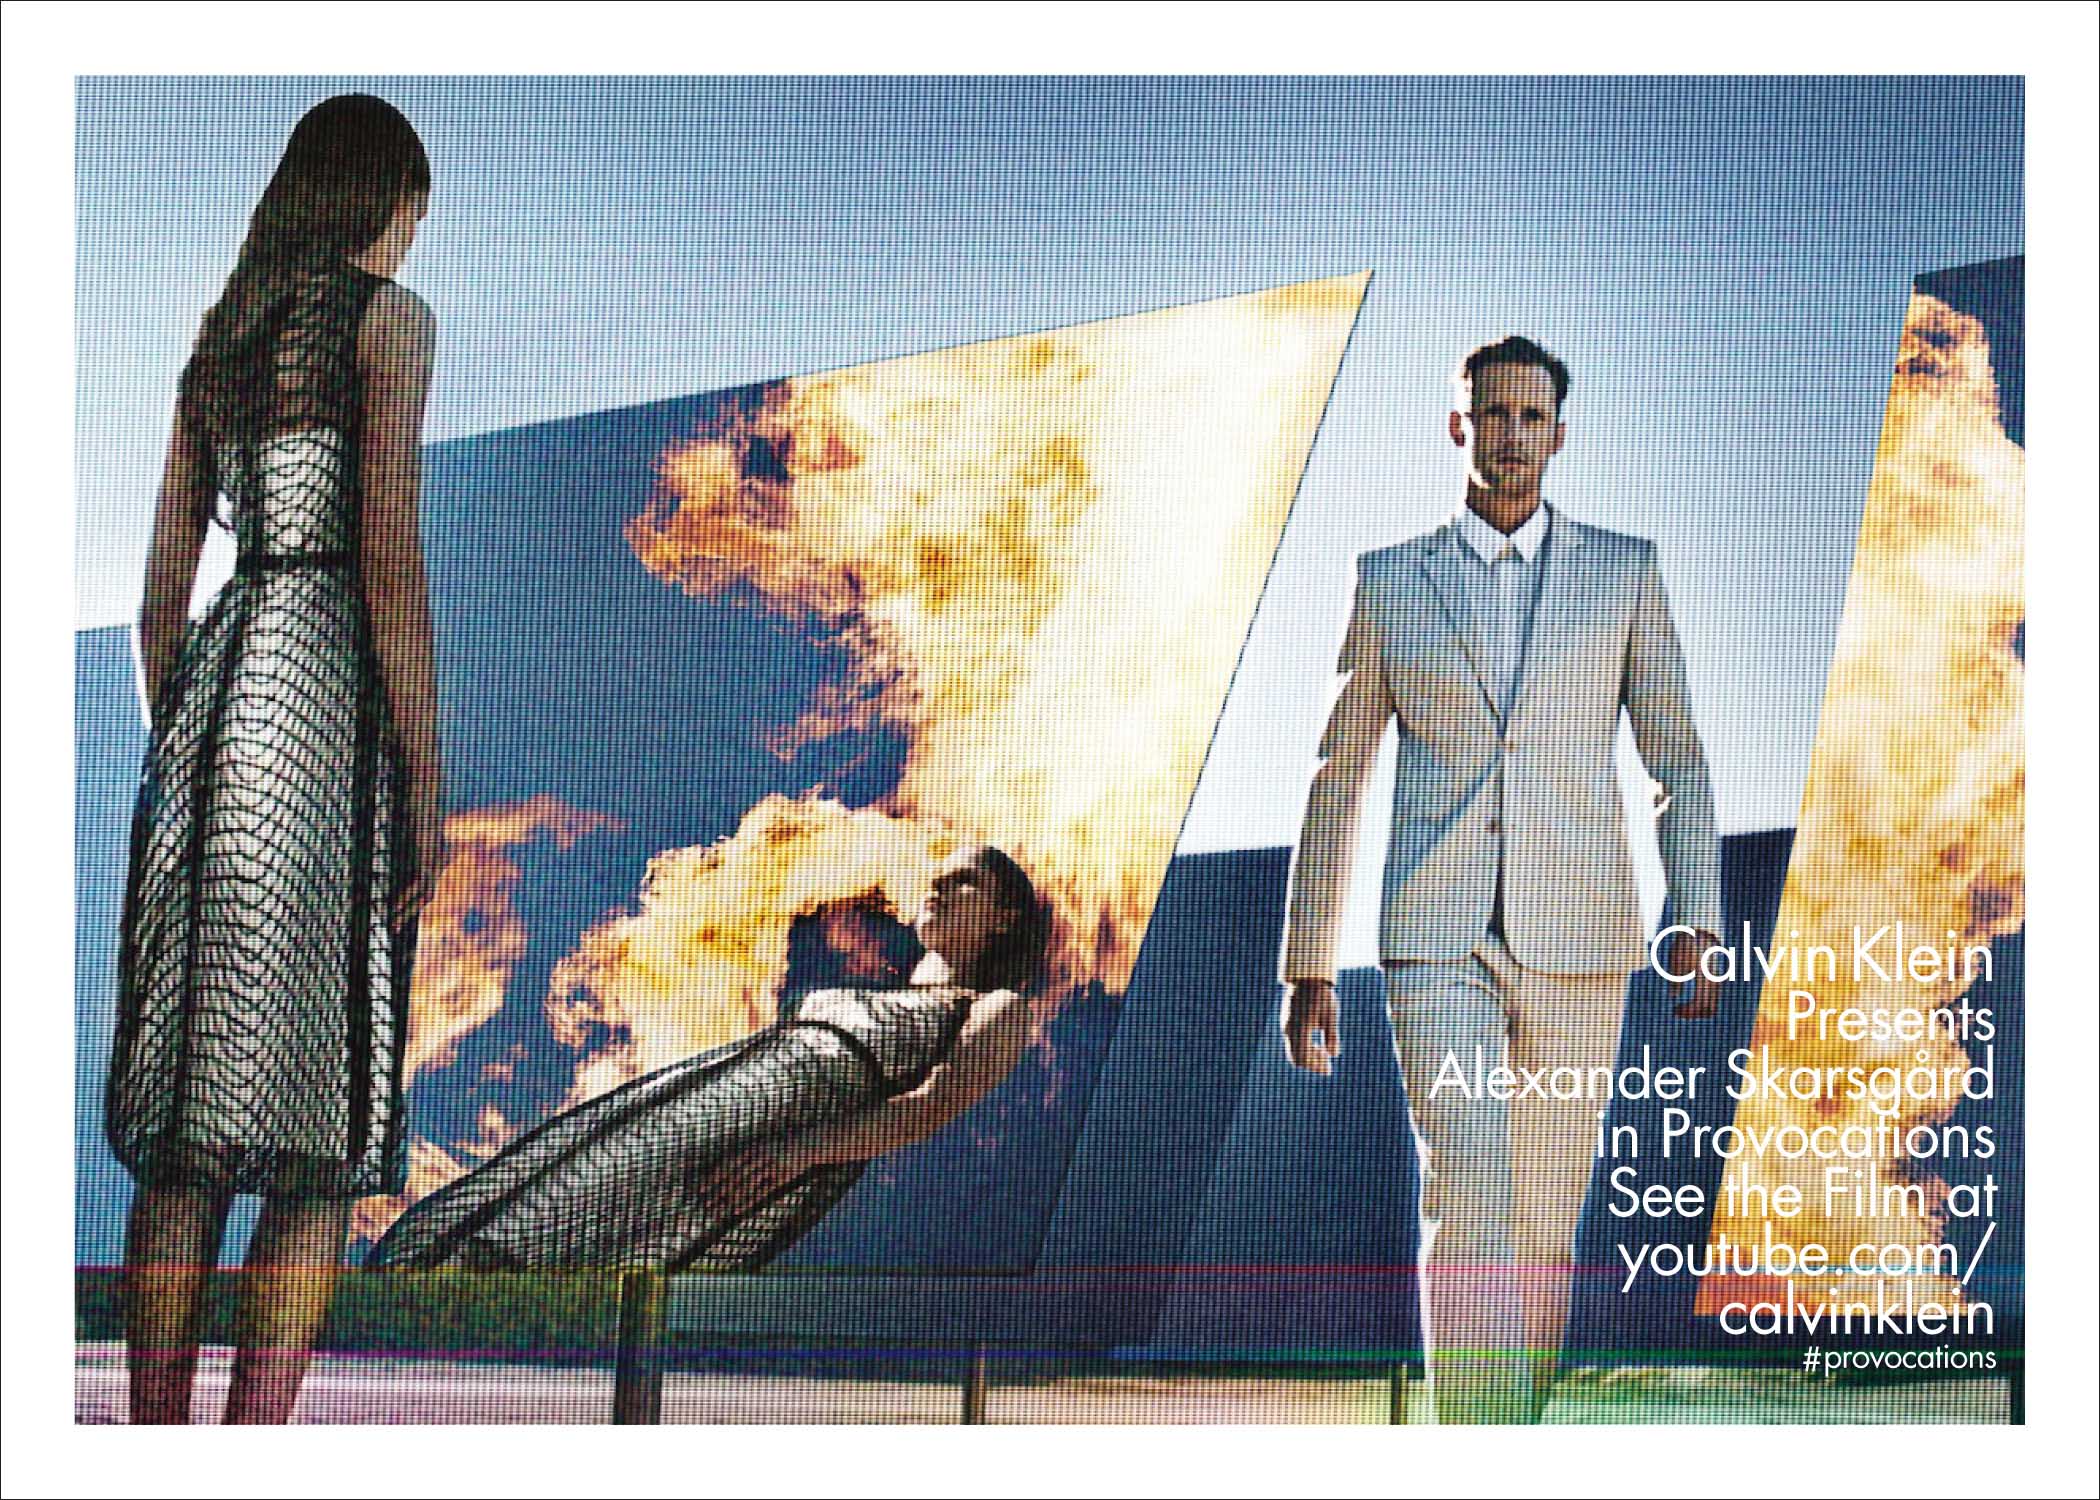 Alexander Skarsgård Stars in Calvin Klein's Spring/Summer 2013 Campaigns